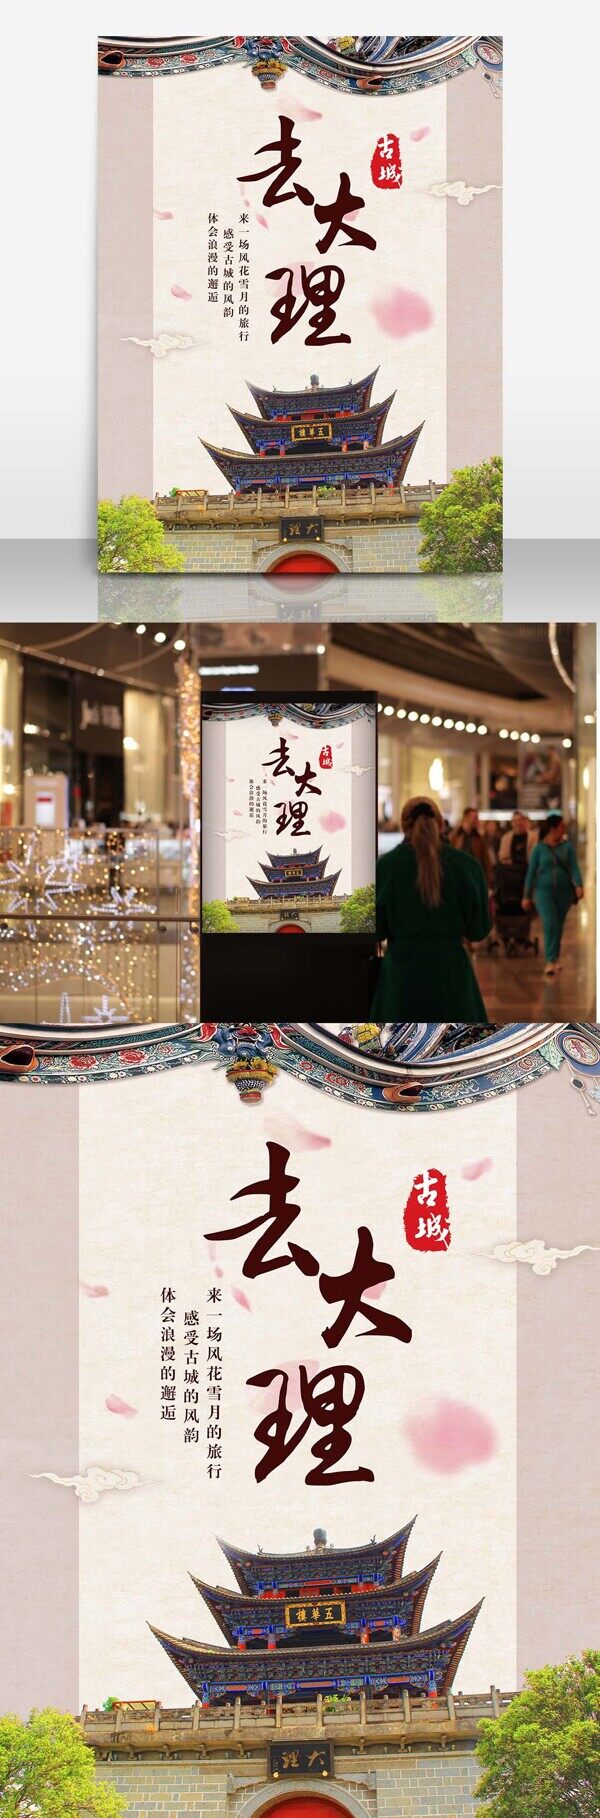 去大理古城旅游中国风旅行旅行社广告海报